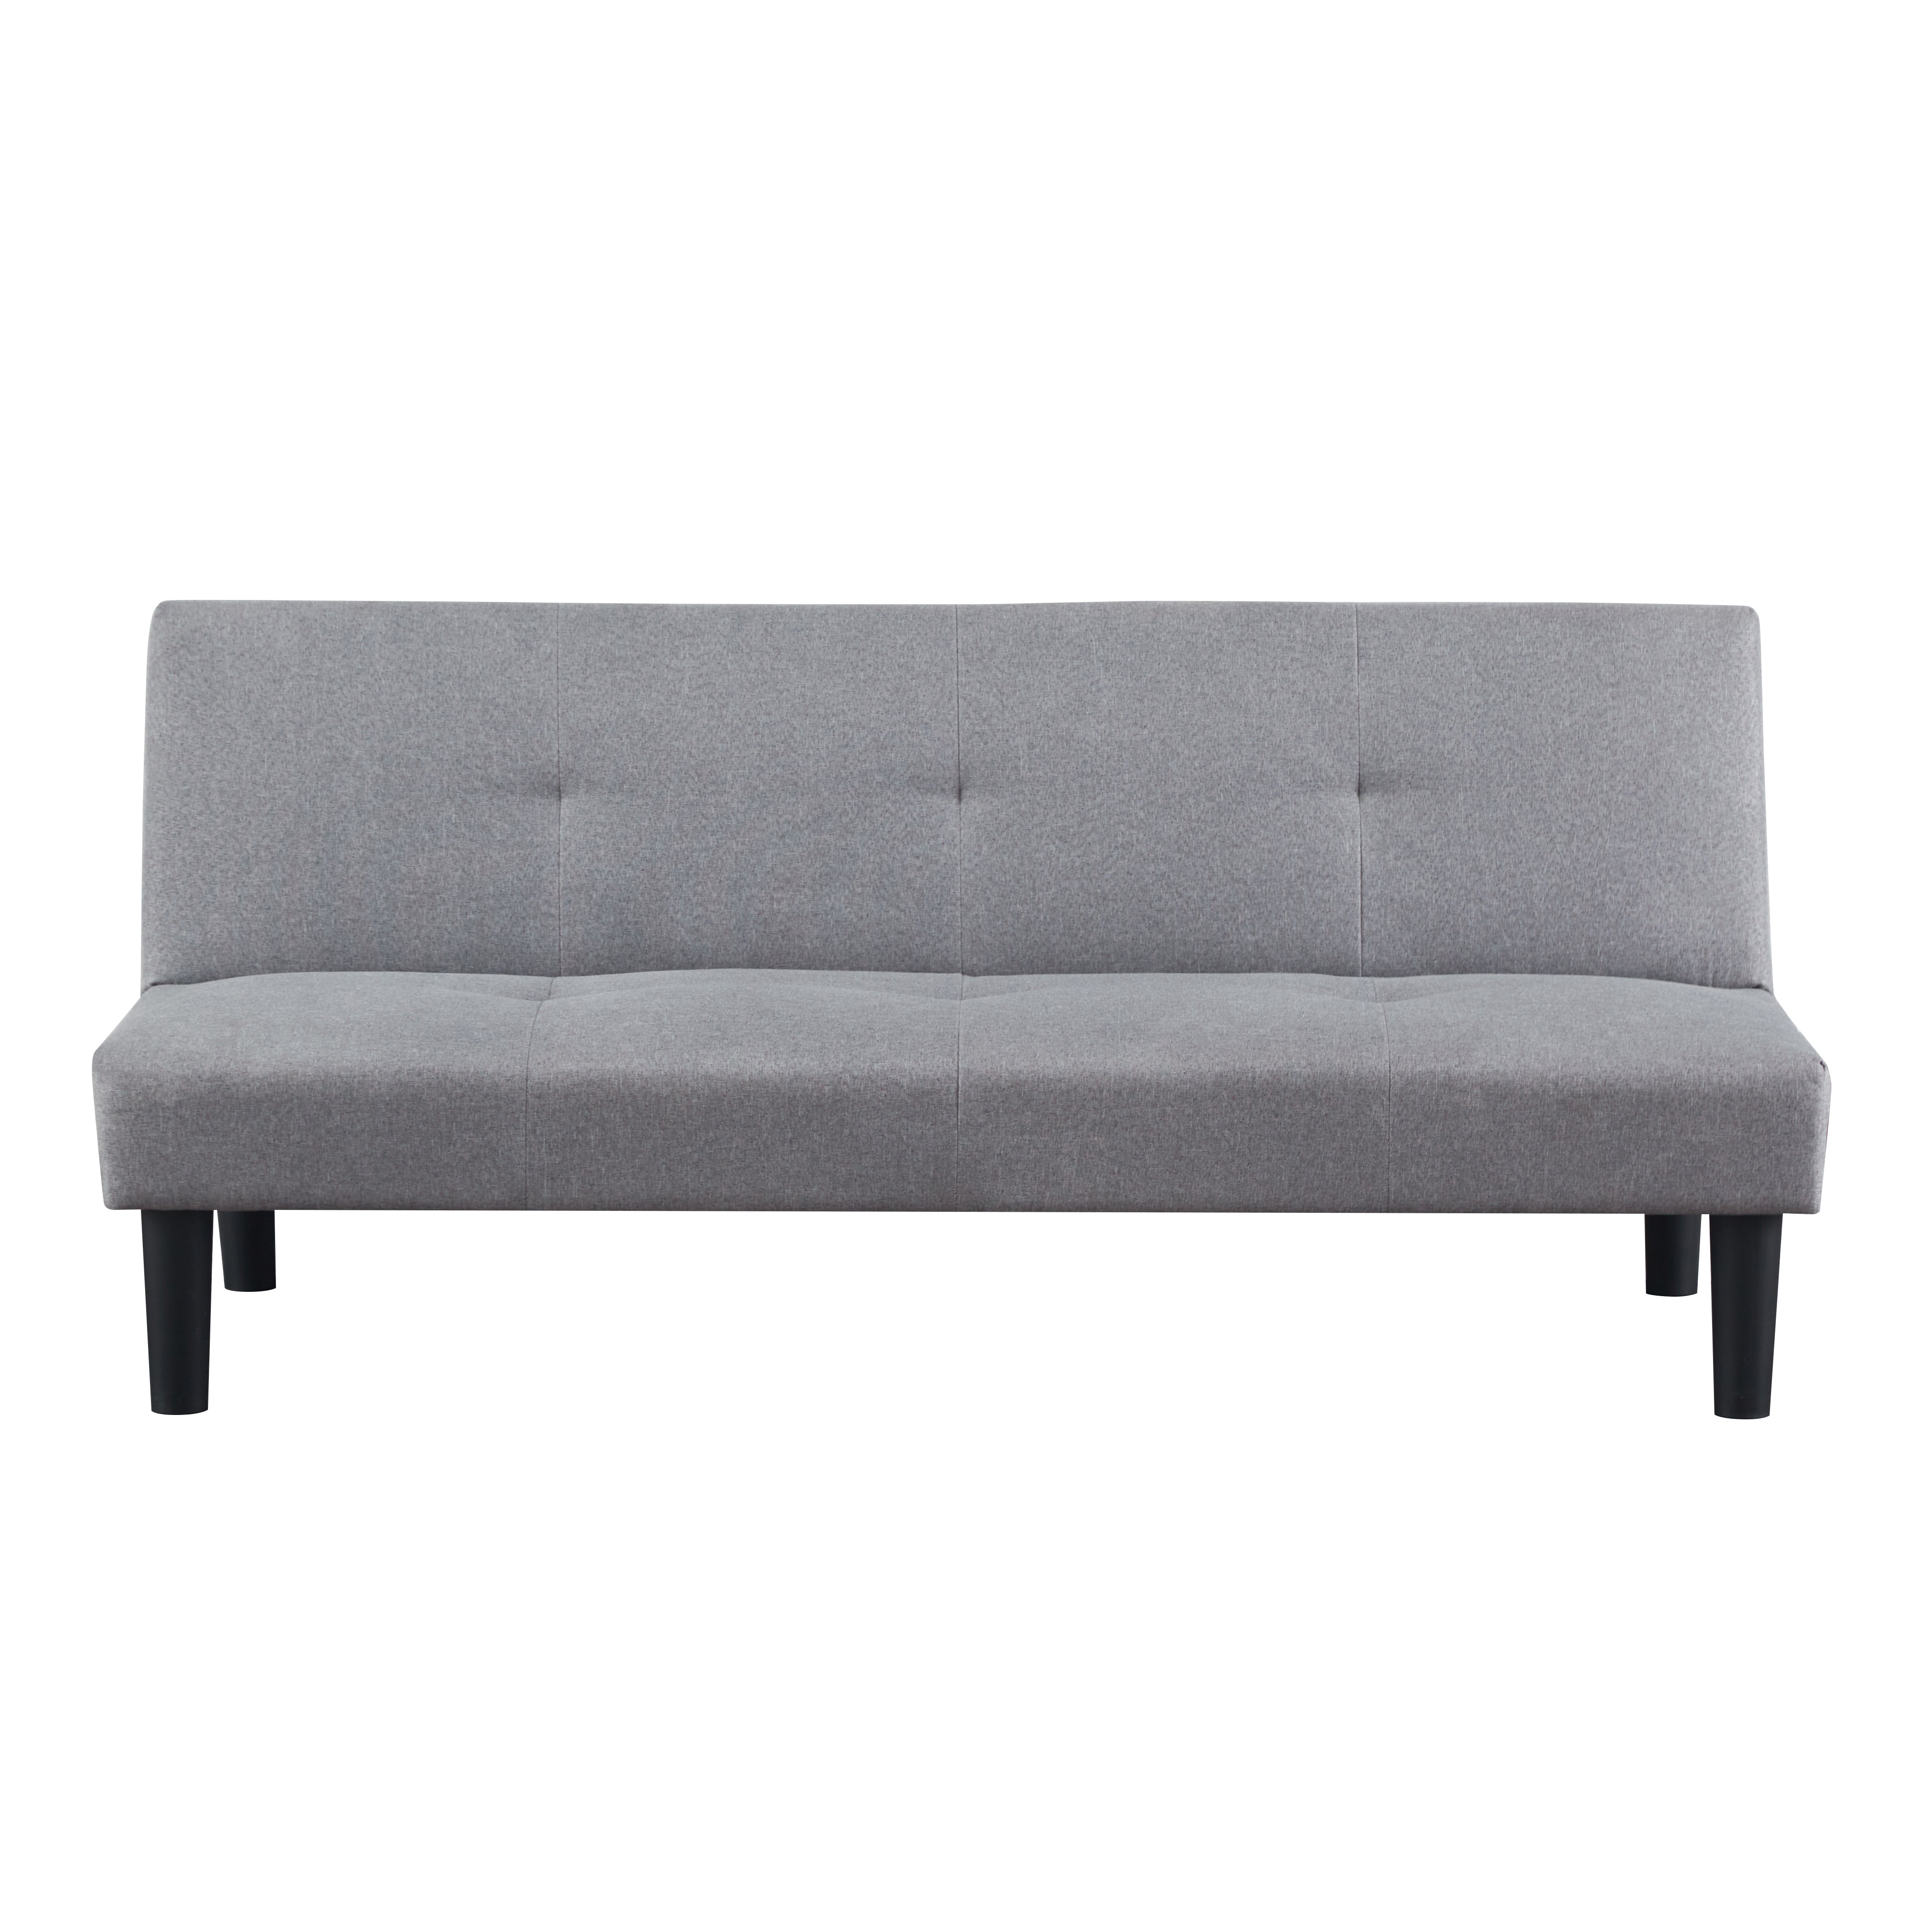 Sofale Grey Fellce Sofa Bed